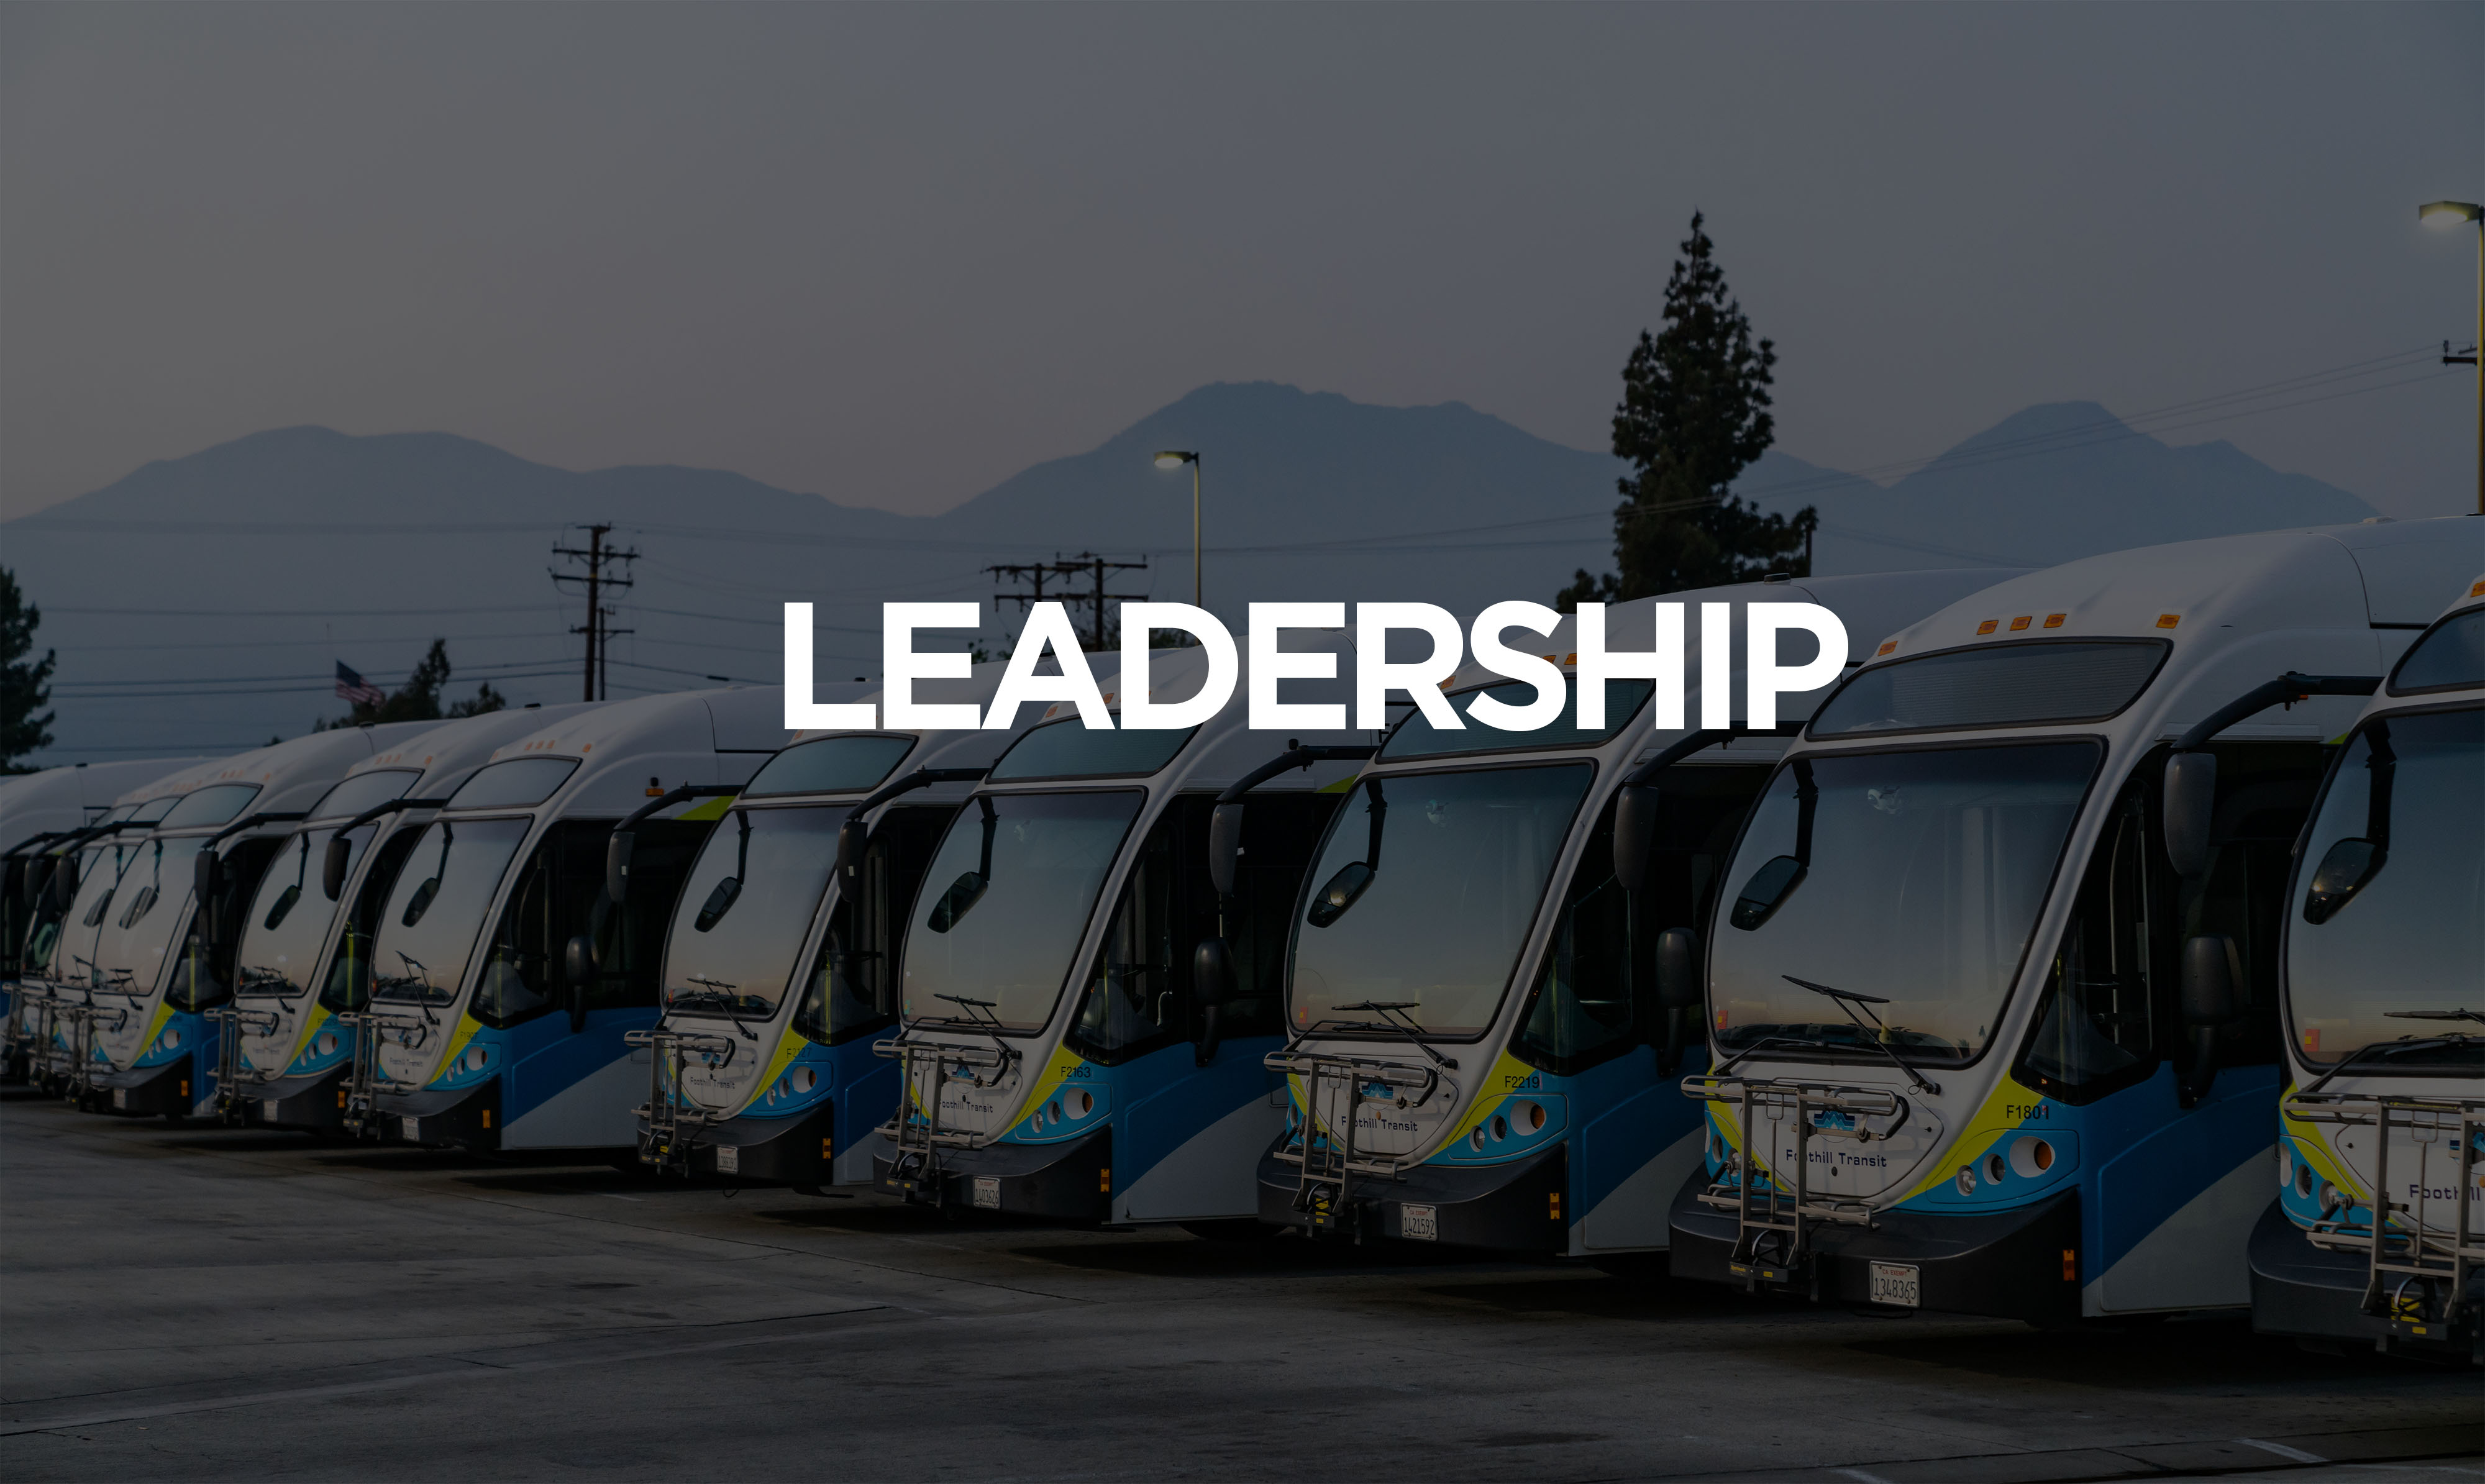 10 autobuses estacionados en línea mostrados desde el frente con liderazgo